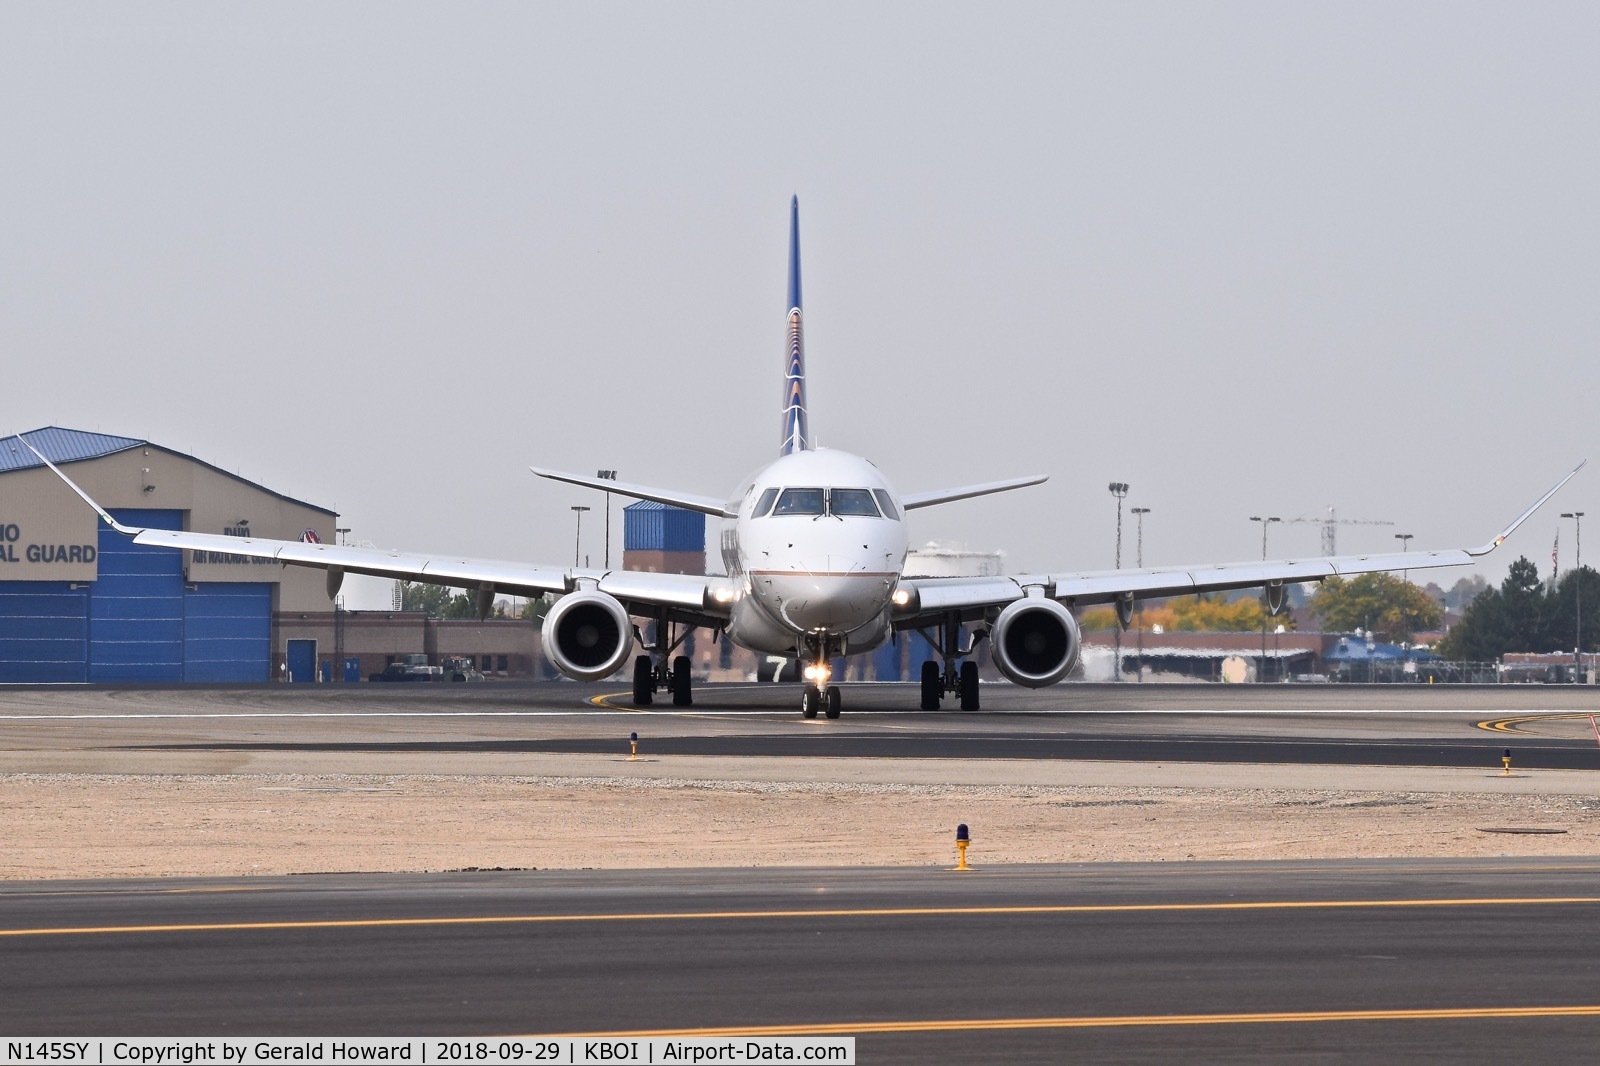 N145SY, 2015 Embraer 175LR (ERJ-170-200LR) C/N 17000484, Turning onto Delta from RWY 10L.